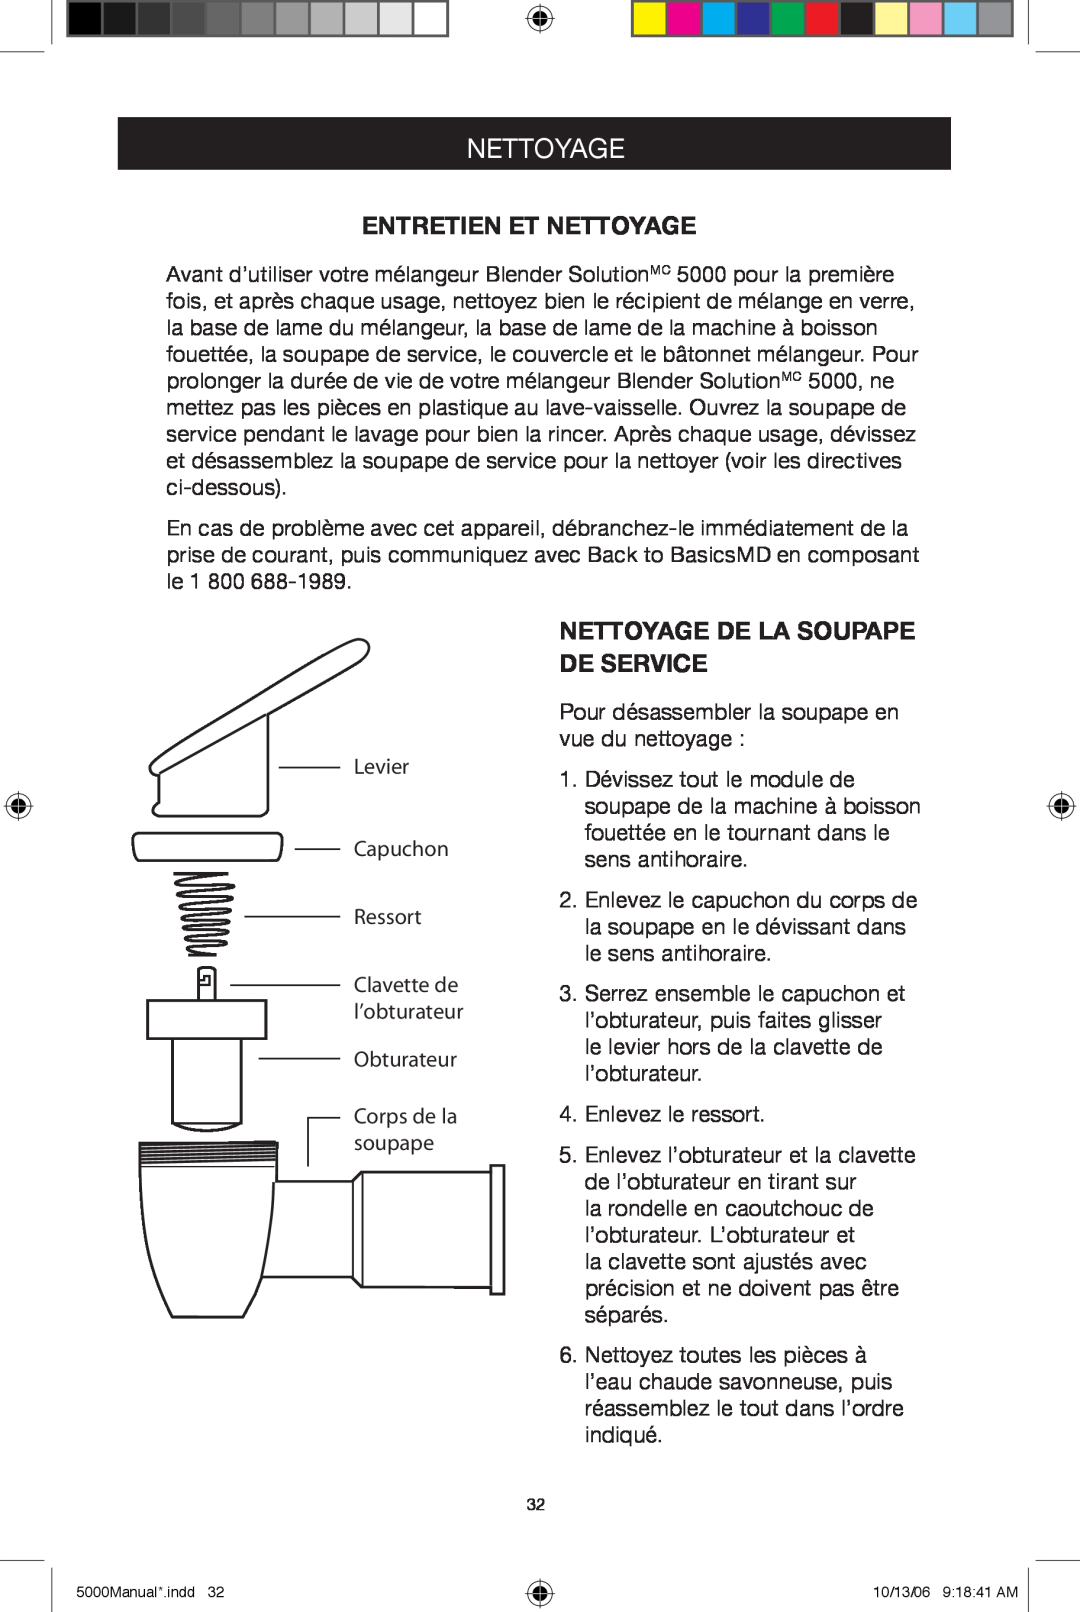 Black & Decker 5500 manuel dutilisation Entretien Et Nettoyage, Nettoyage De La Soupape De Service 